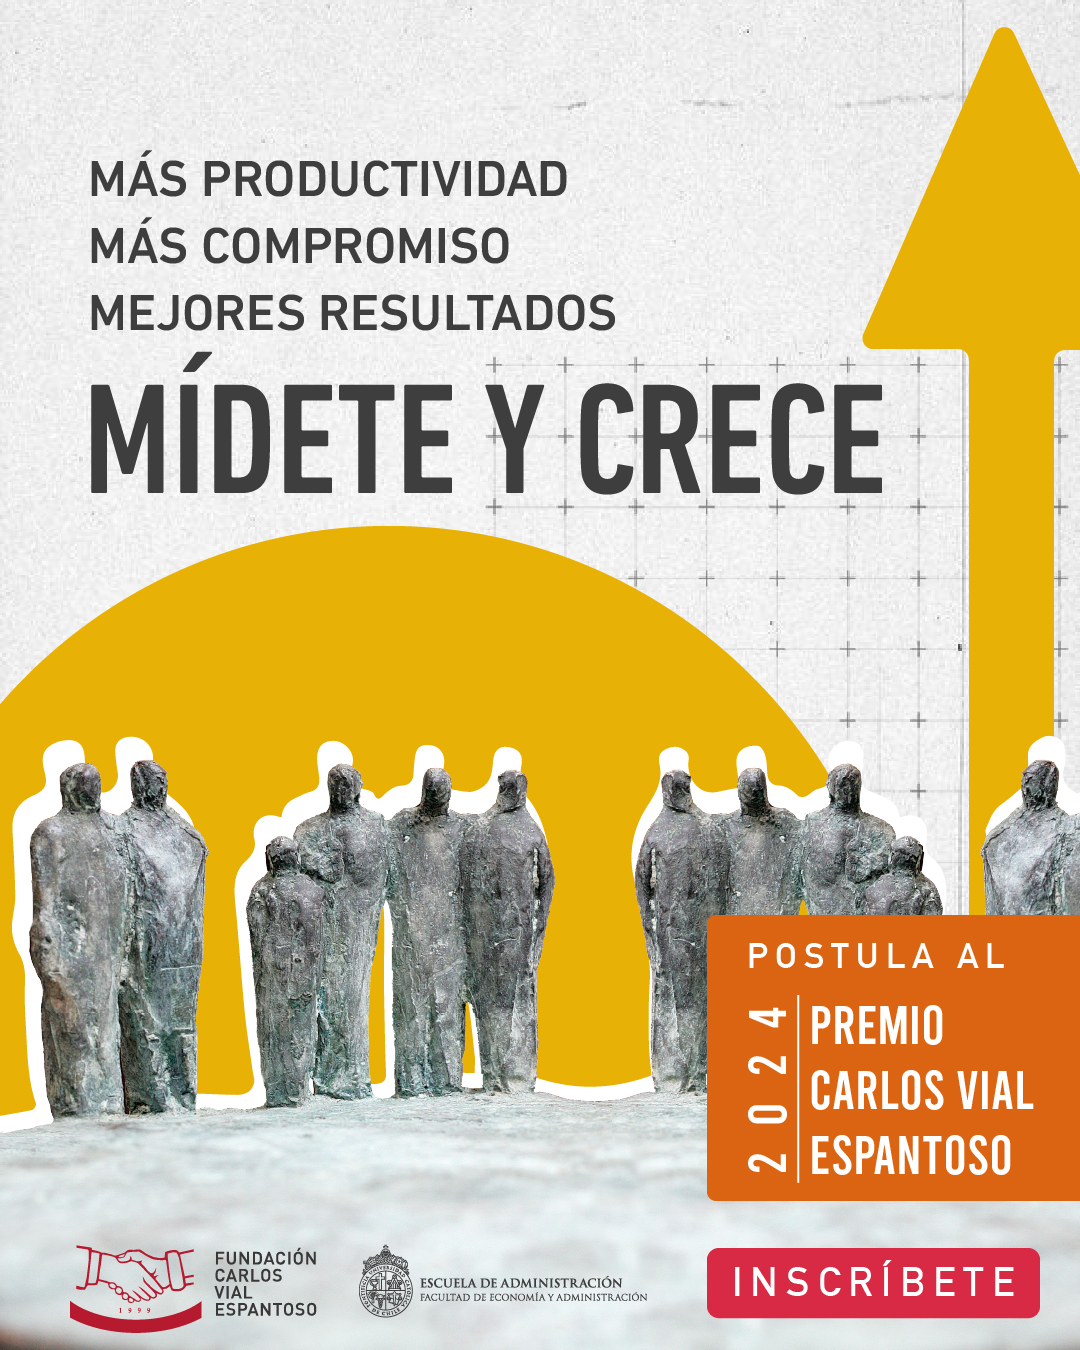 Premio Carlos Vial Espantoso: Empresas postulantes obtendrán diagnóstico y benchmark gratis de sus relaciones laborales